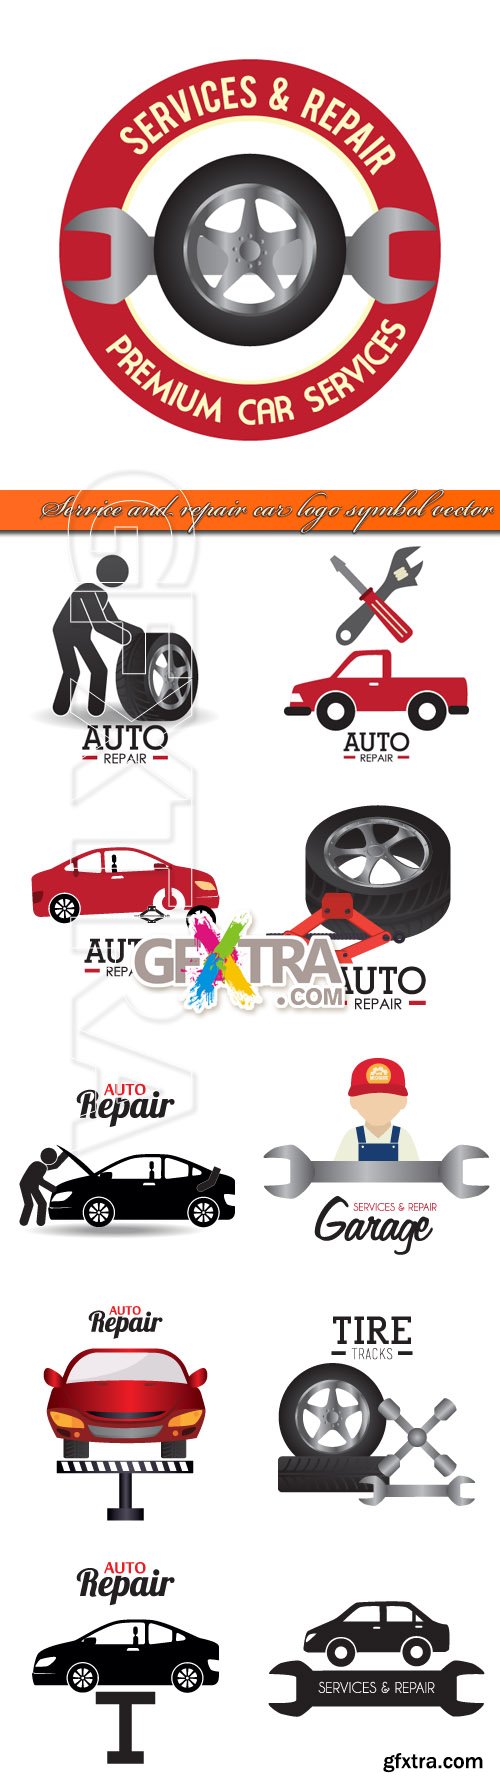 Service and repair car logo symbol vector